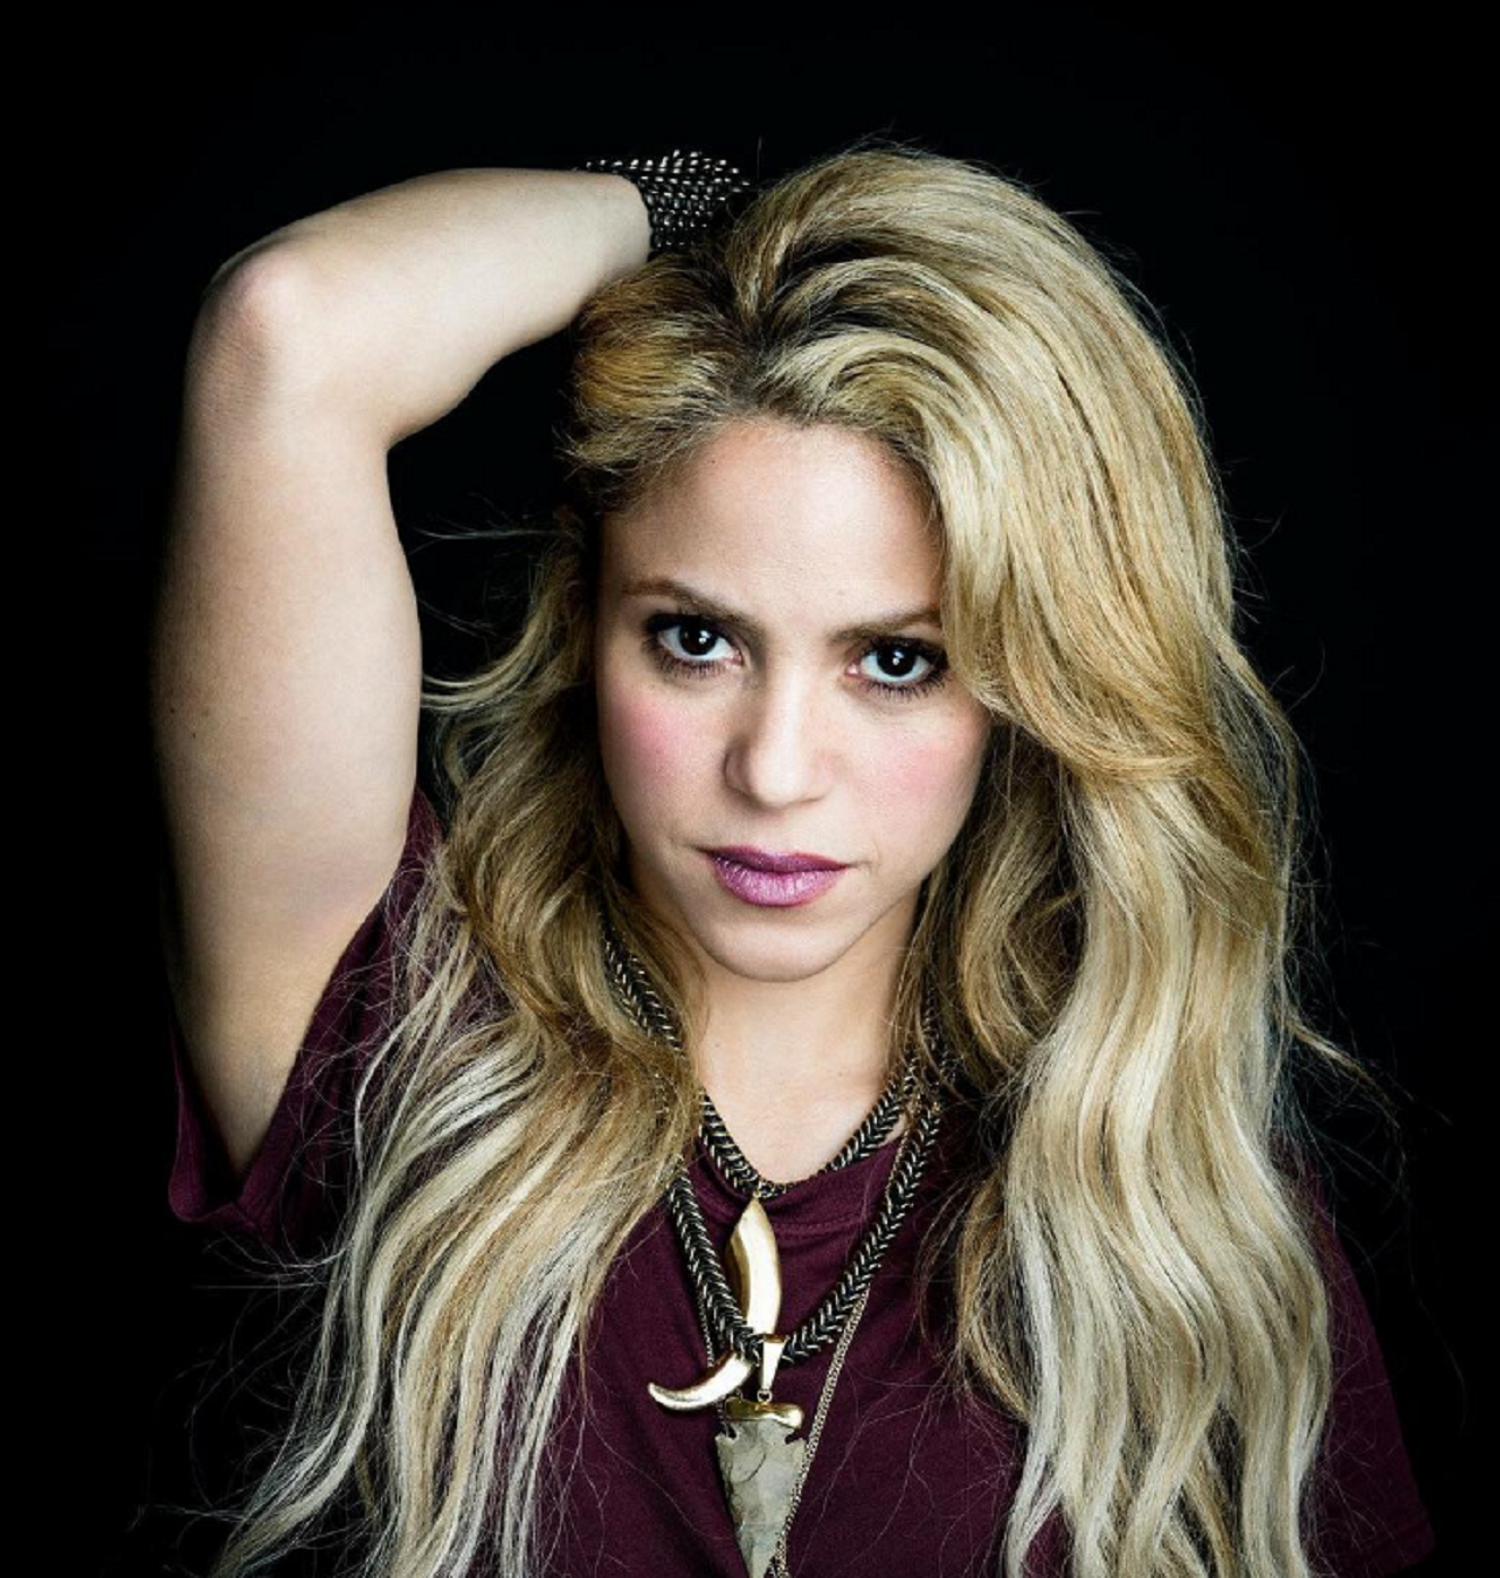 El masclista comentari d'Alfonso Rojo sobre una foto de Shakira sense sostenidors